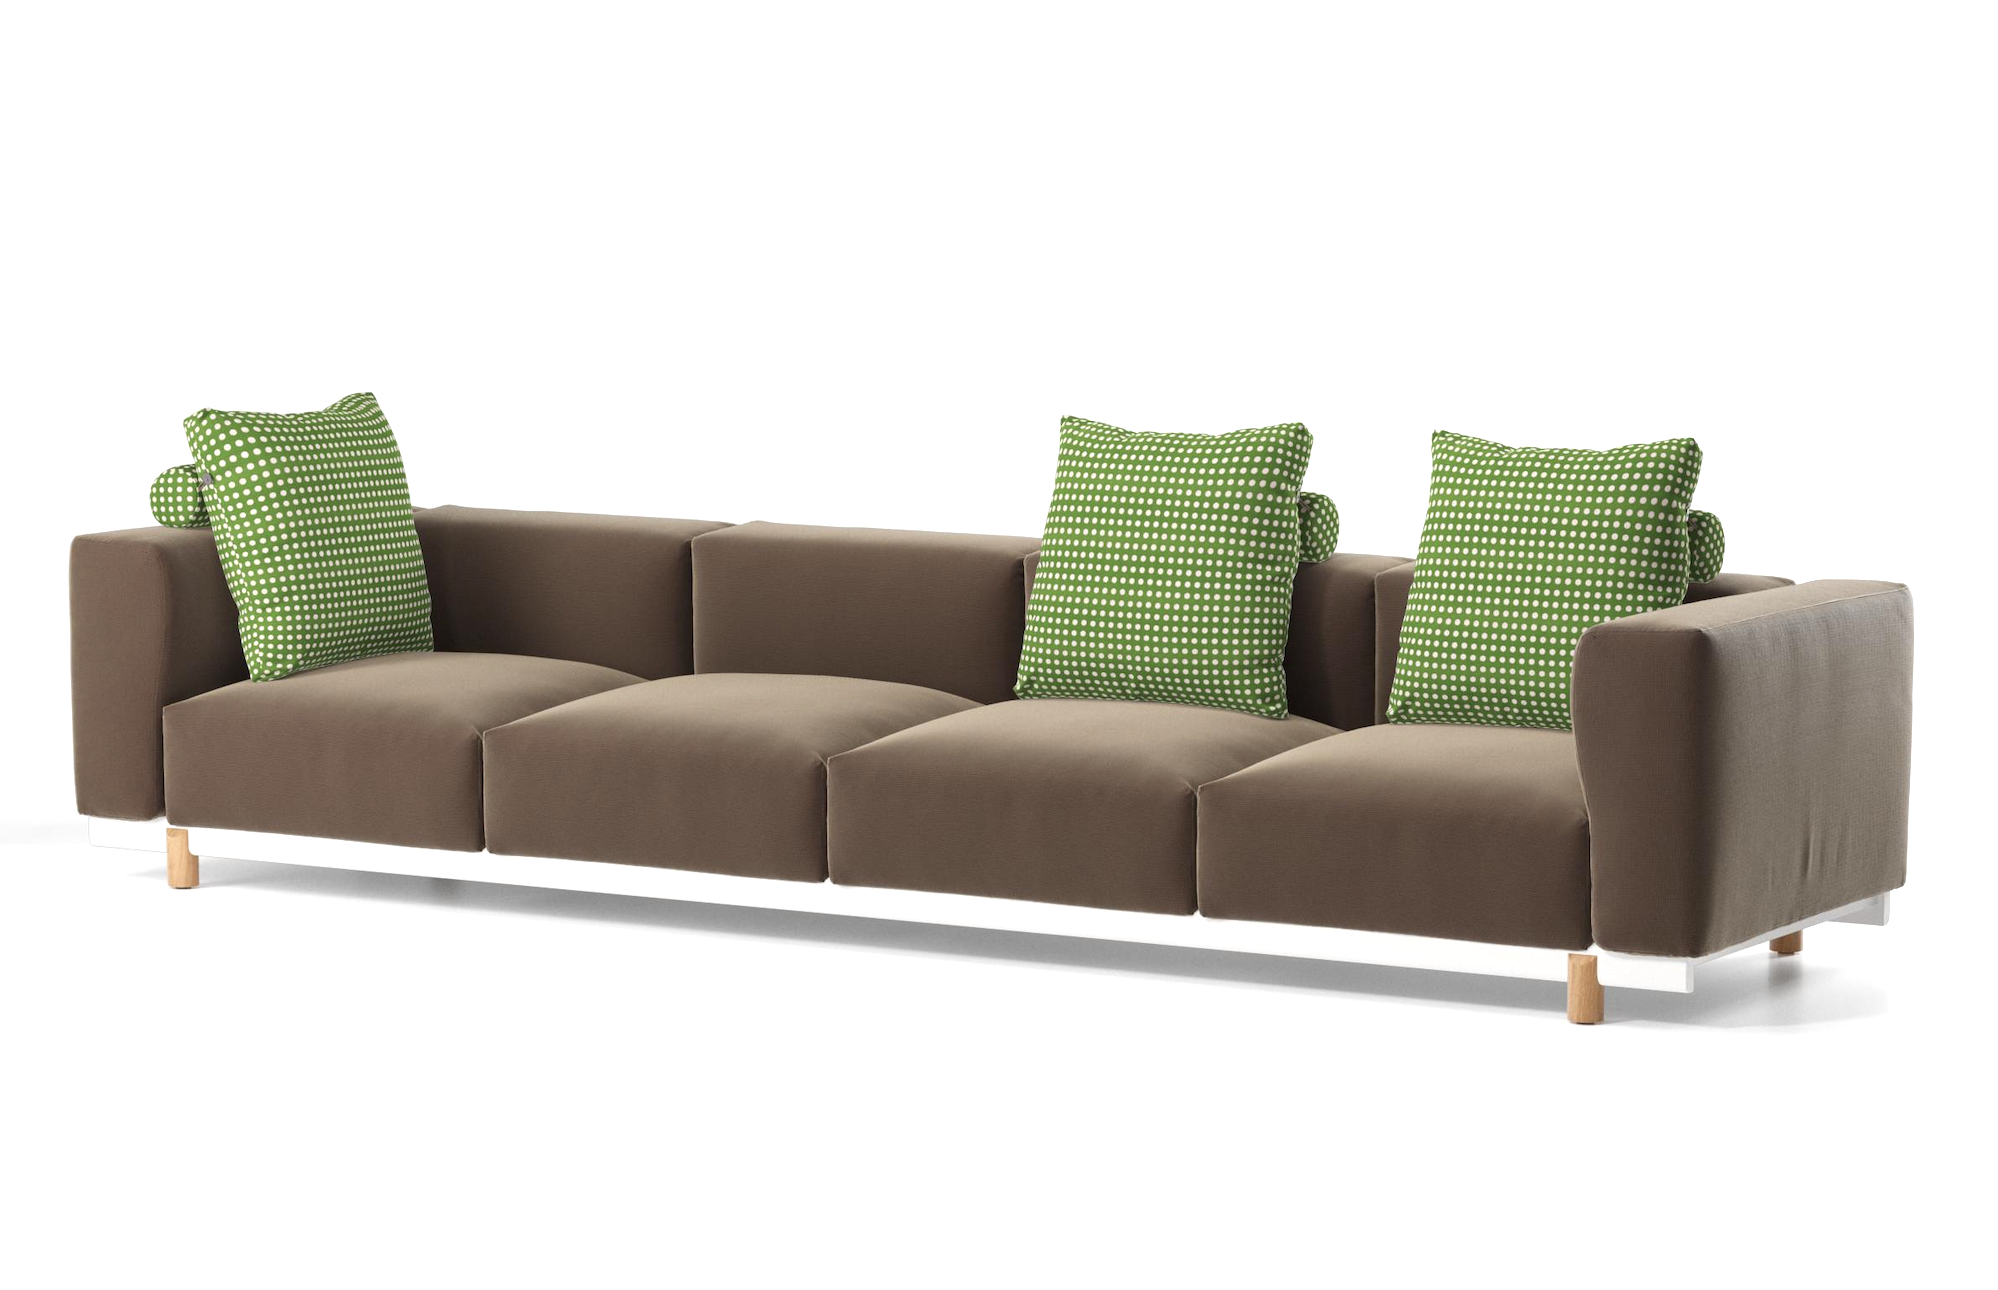 Product Image Molo Sofa 4 Seat